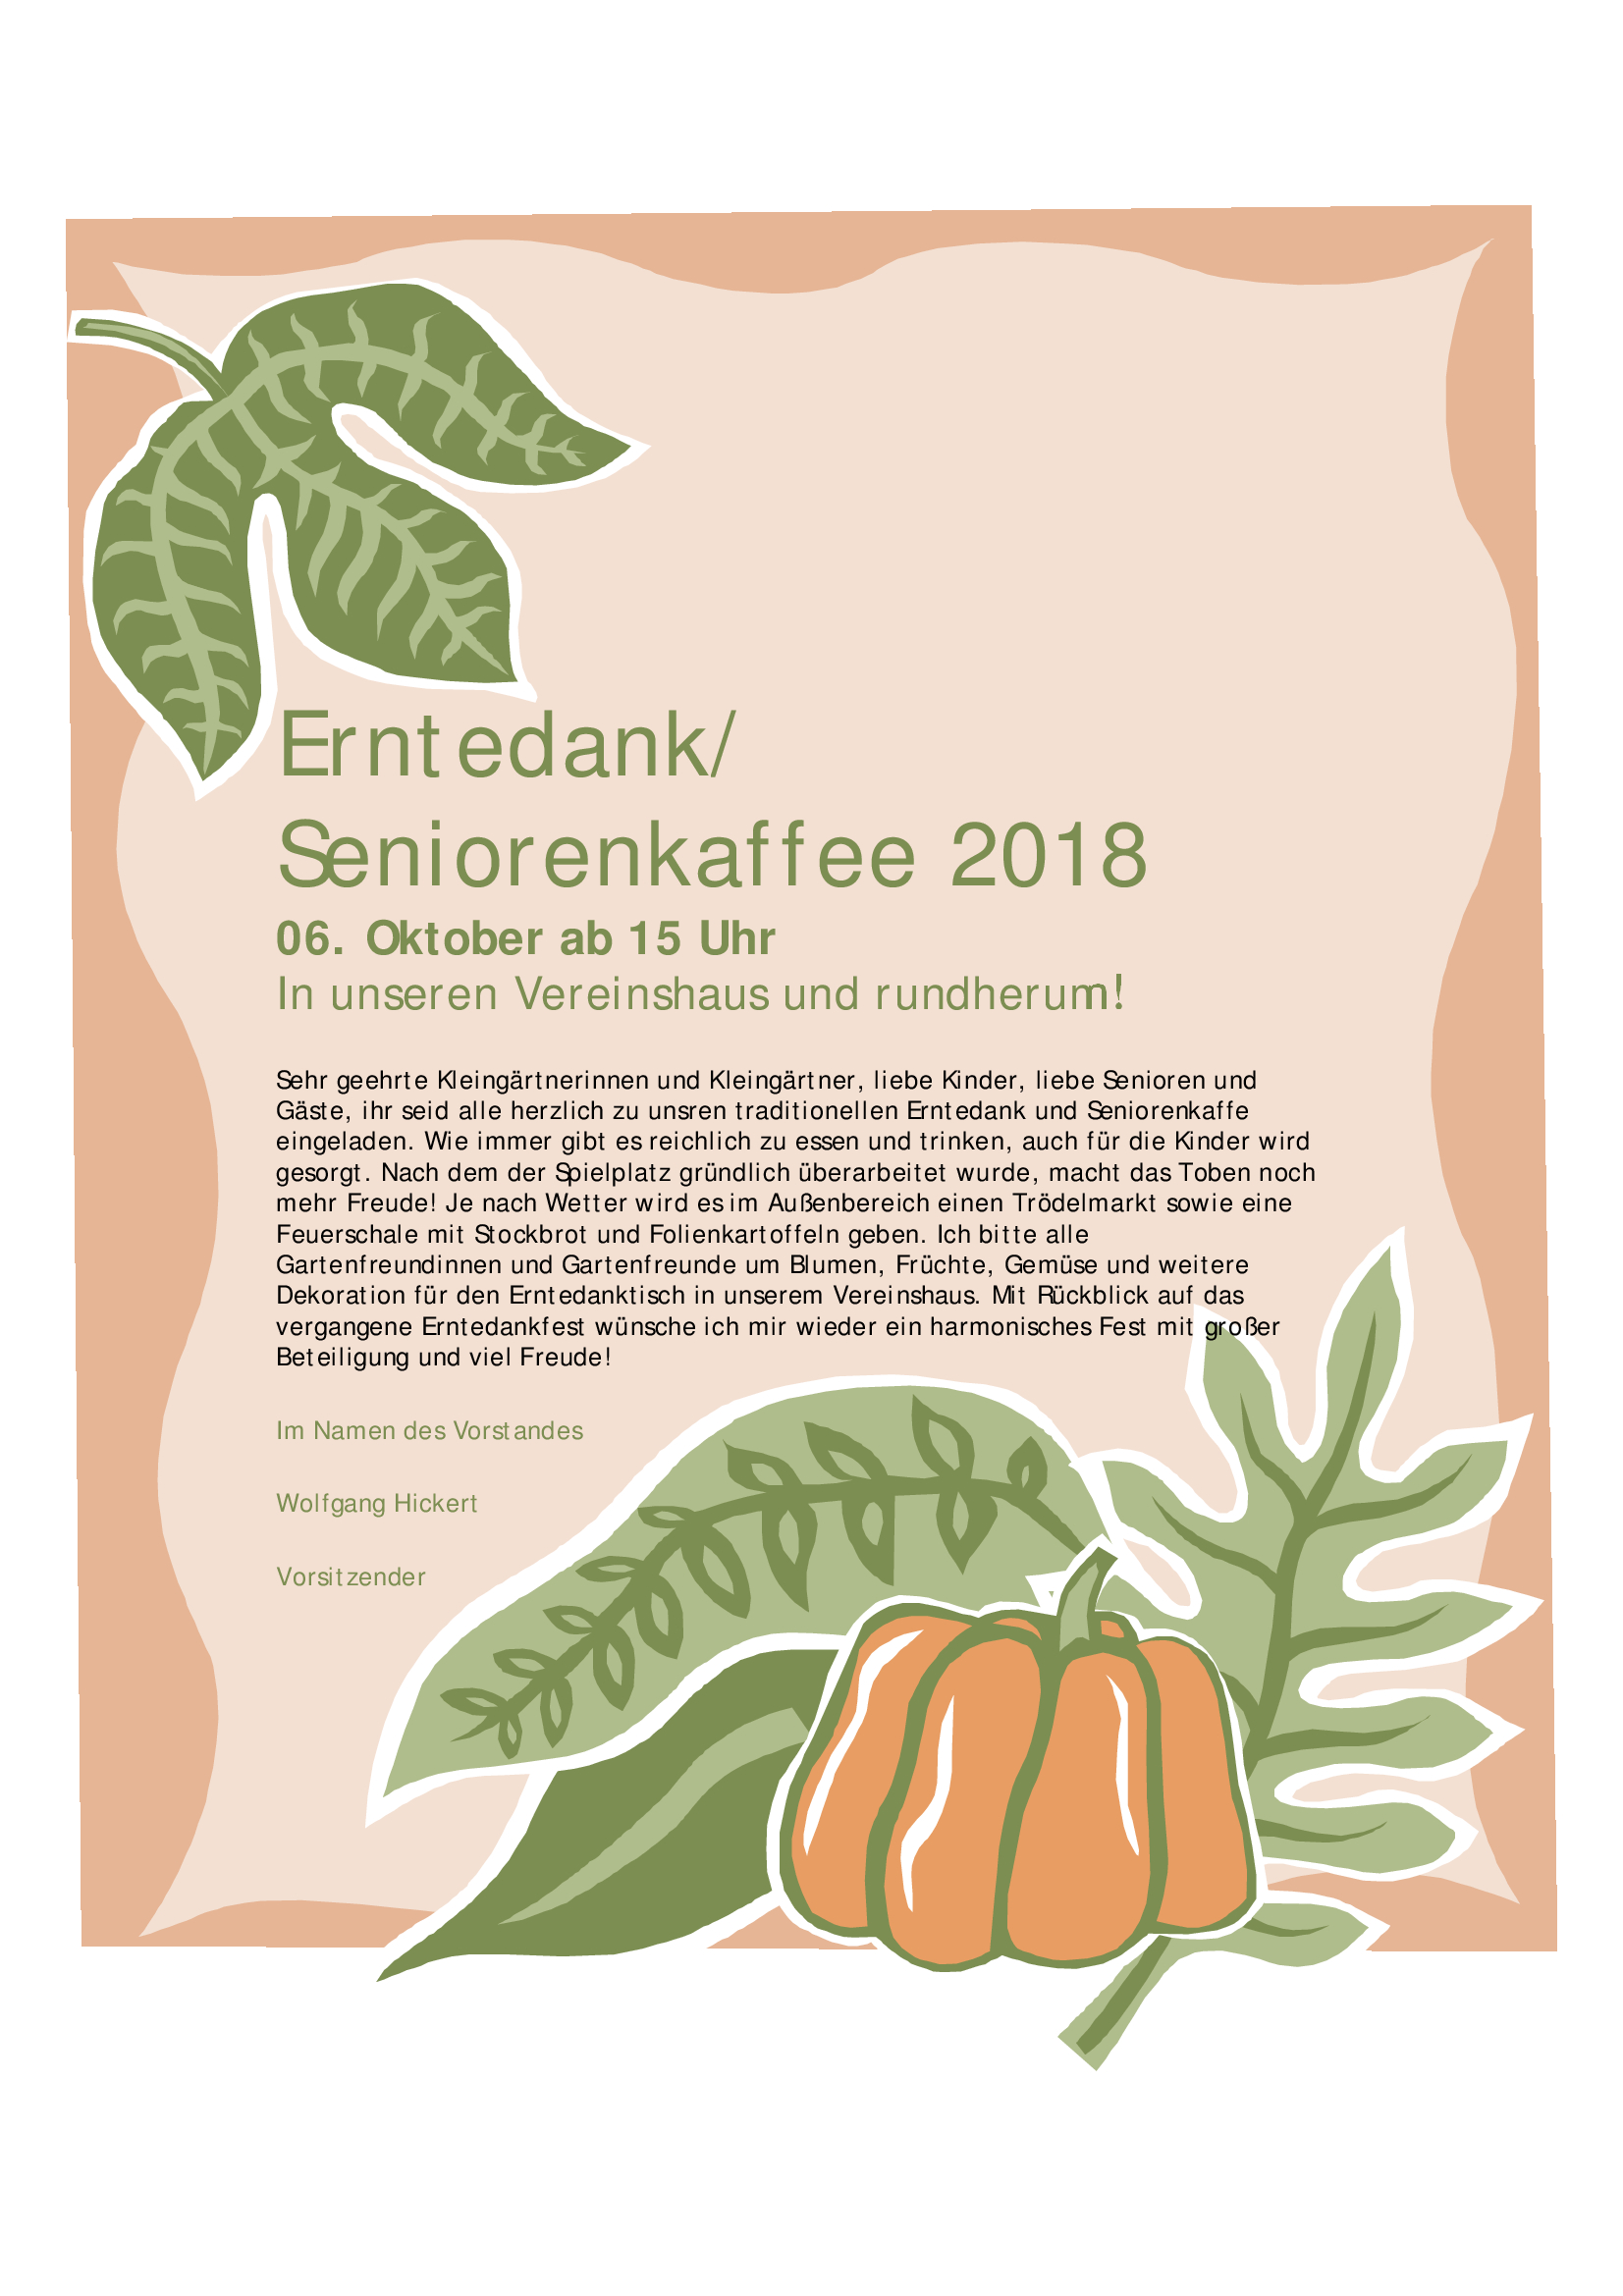 erntedank-seniorenkaffee-2018.jpg